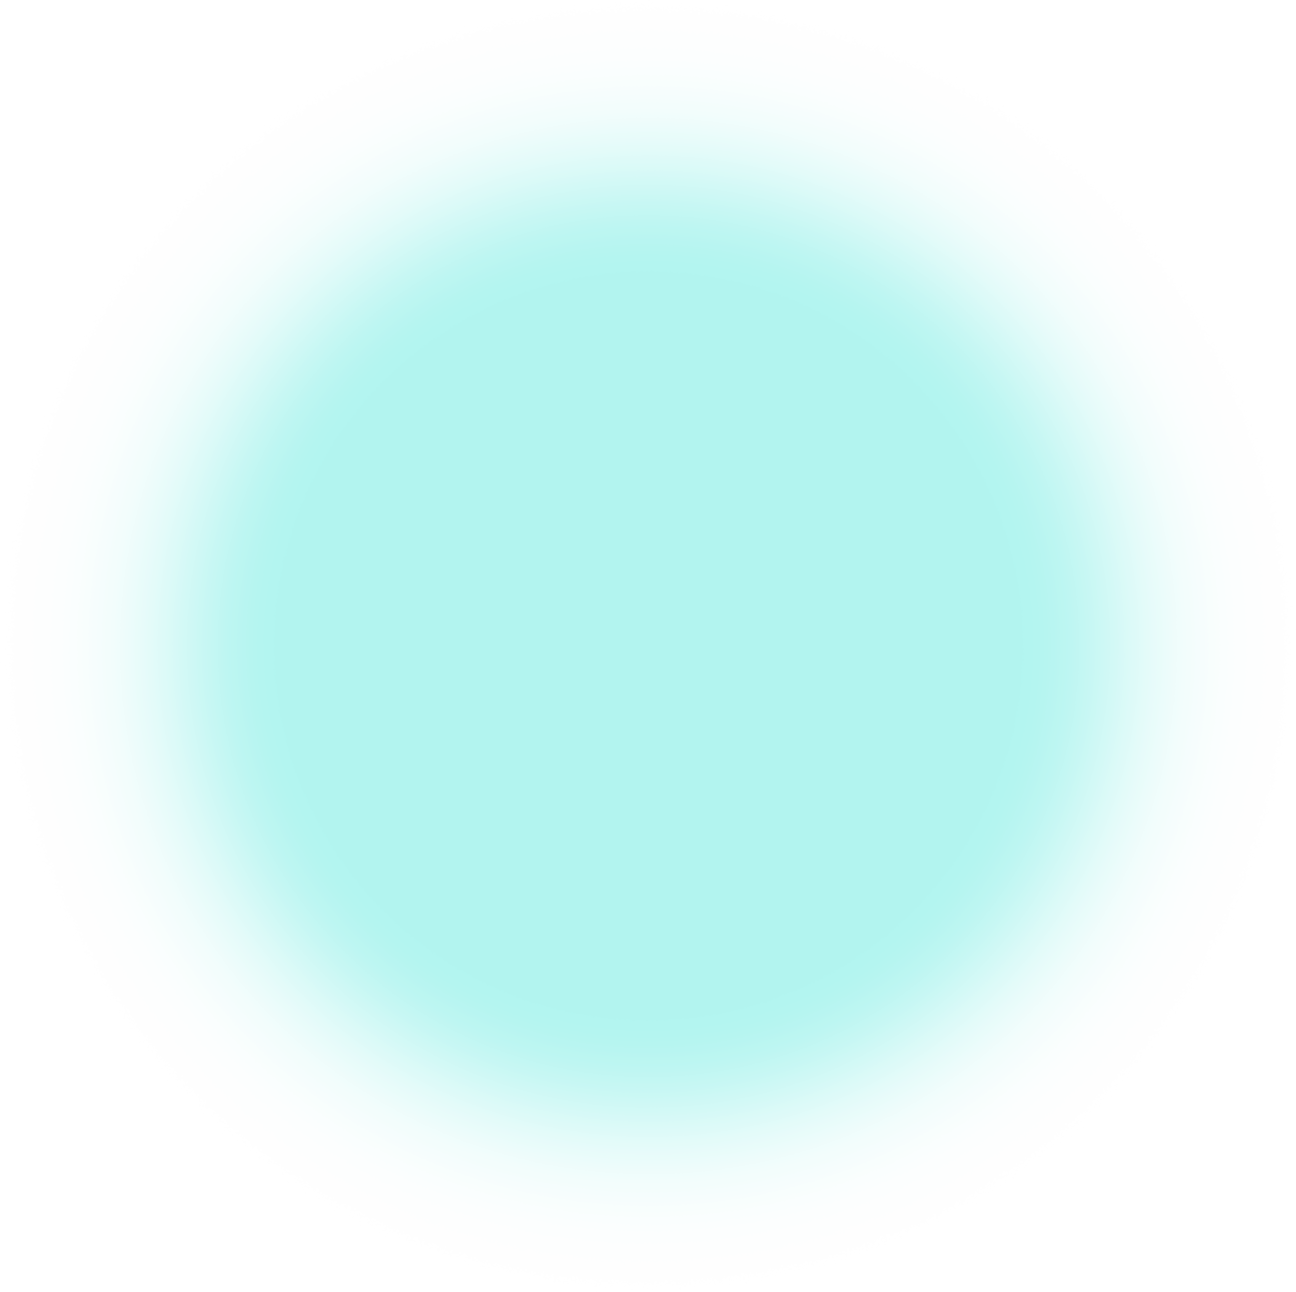 soft glowing aqua circle